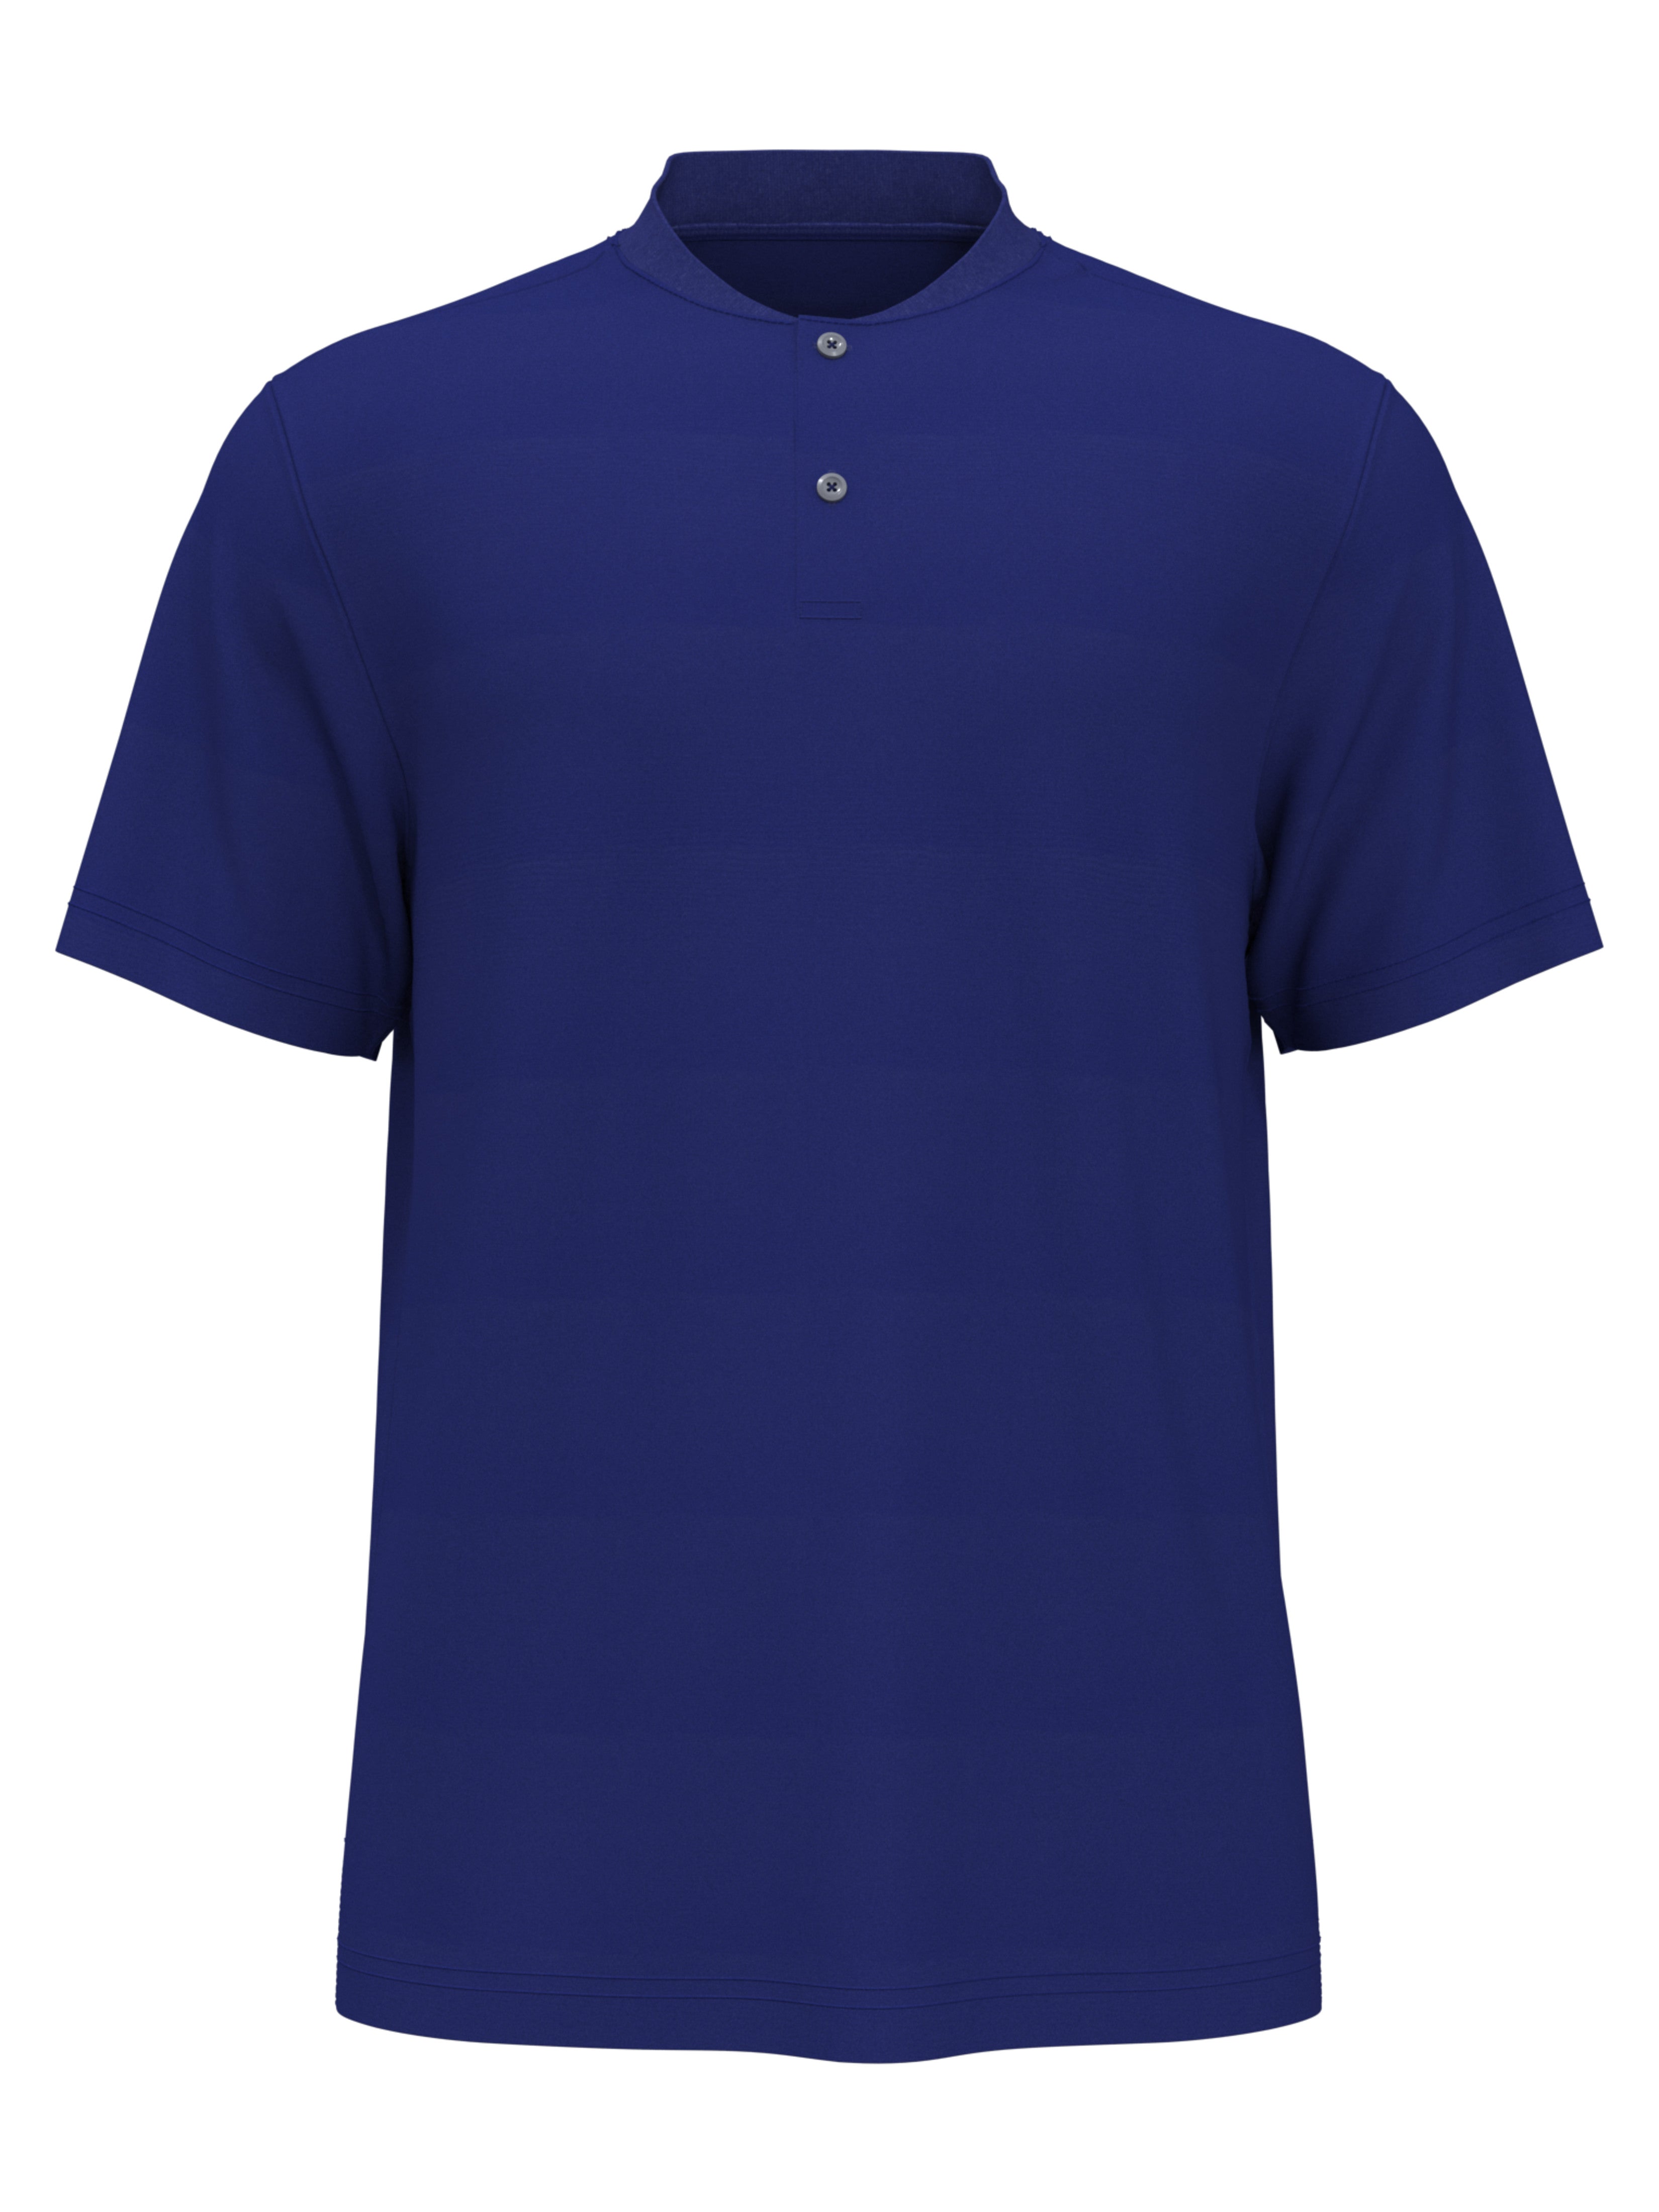 PGA TOUR Apparel Boys Edge Collar Pique Golf Polo Shirt, Size Small, Turkish Sea Blue, 100% Polyester | Golf Apparel Shop